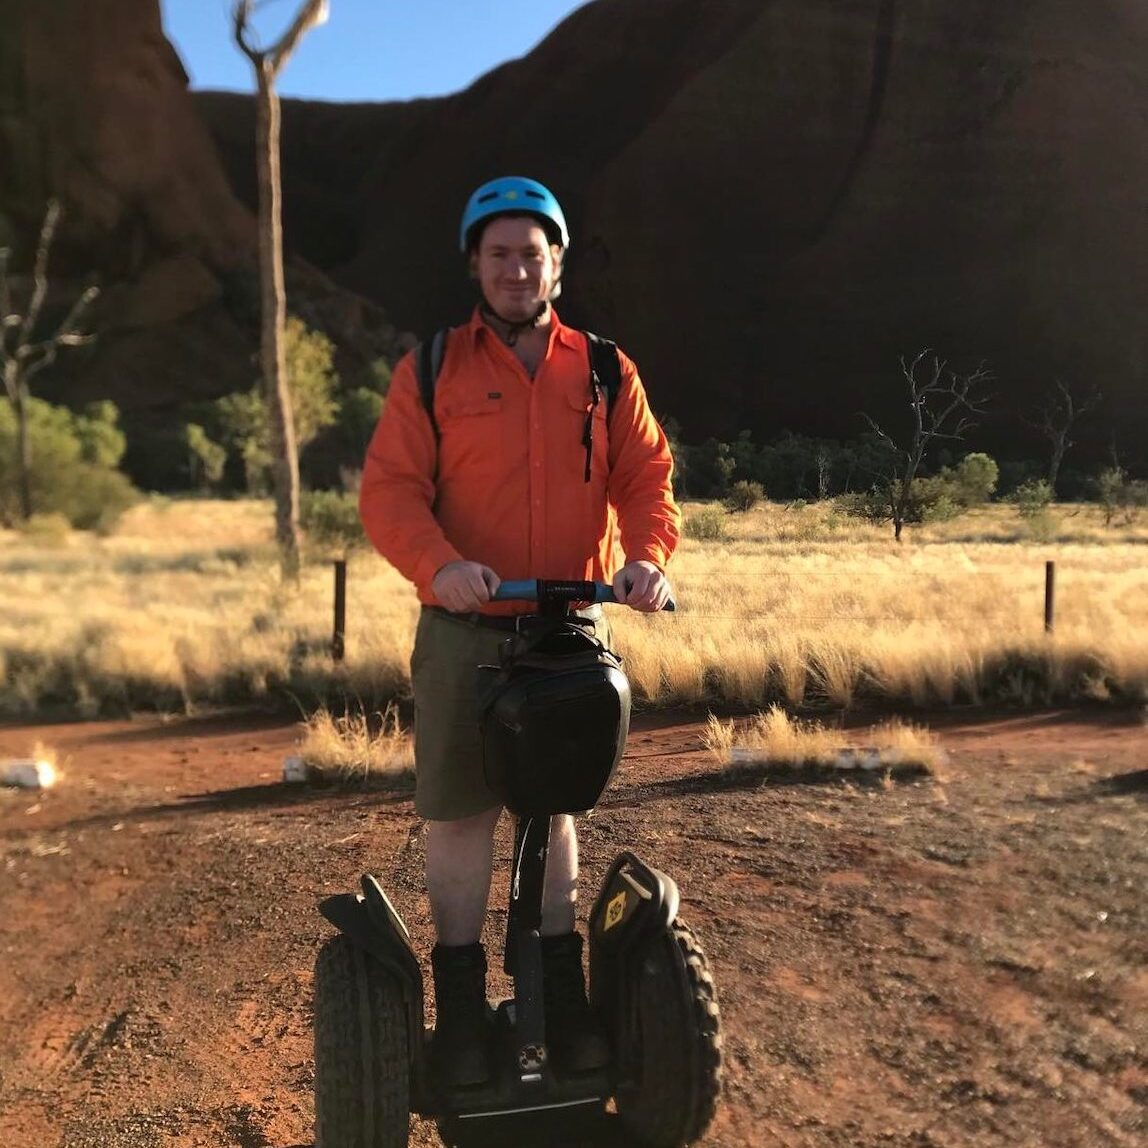 Chris rides a Segway at Uluru